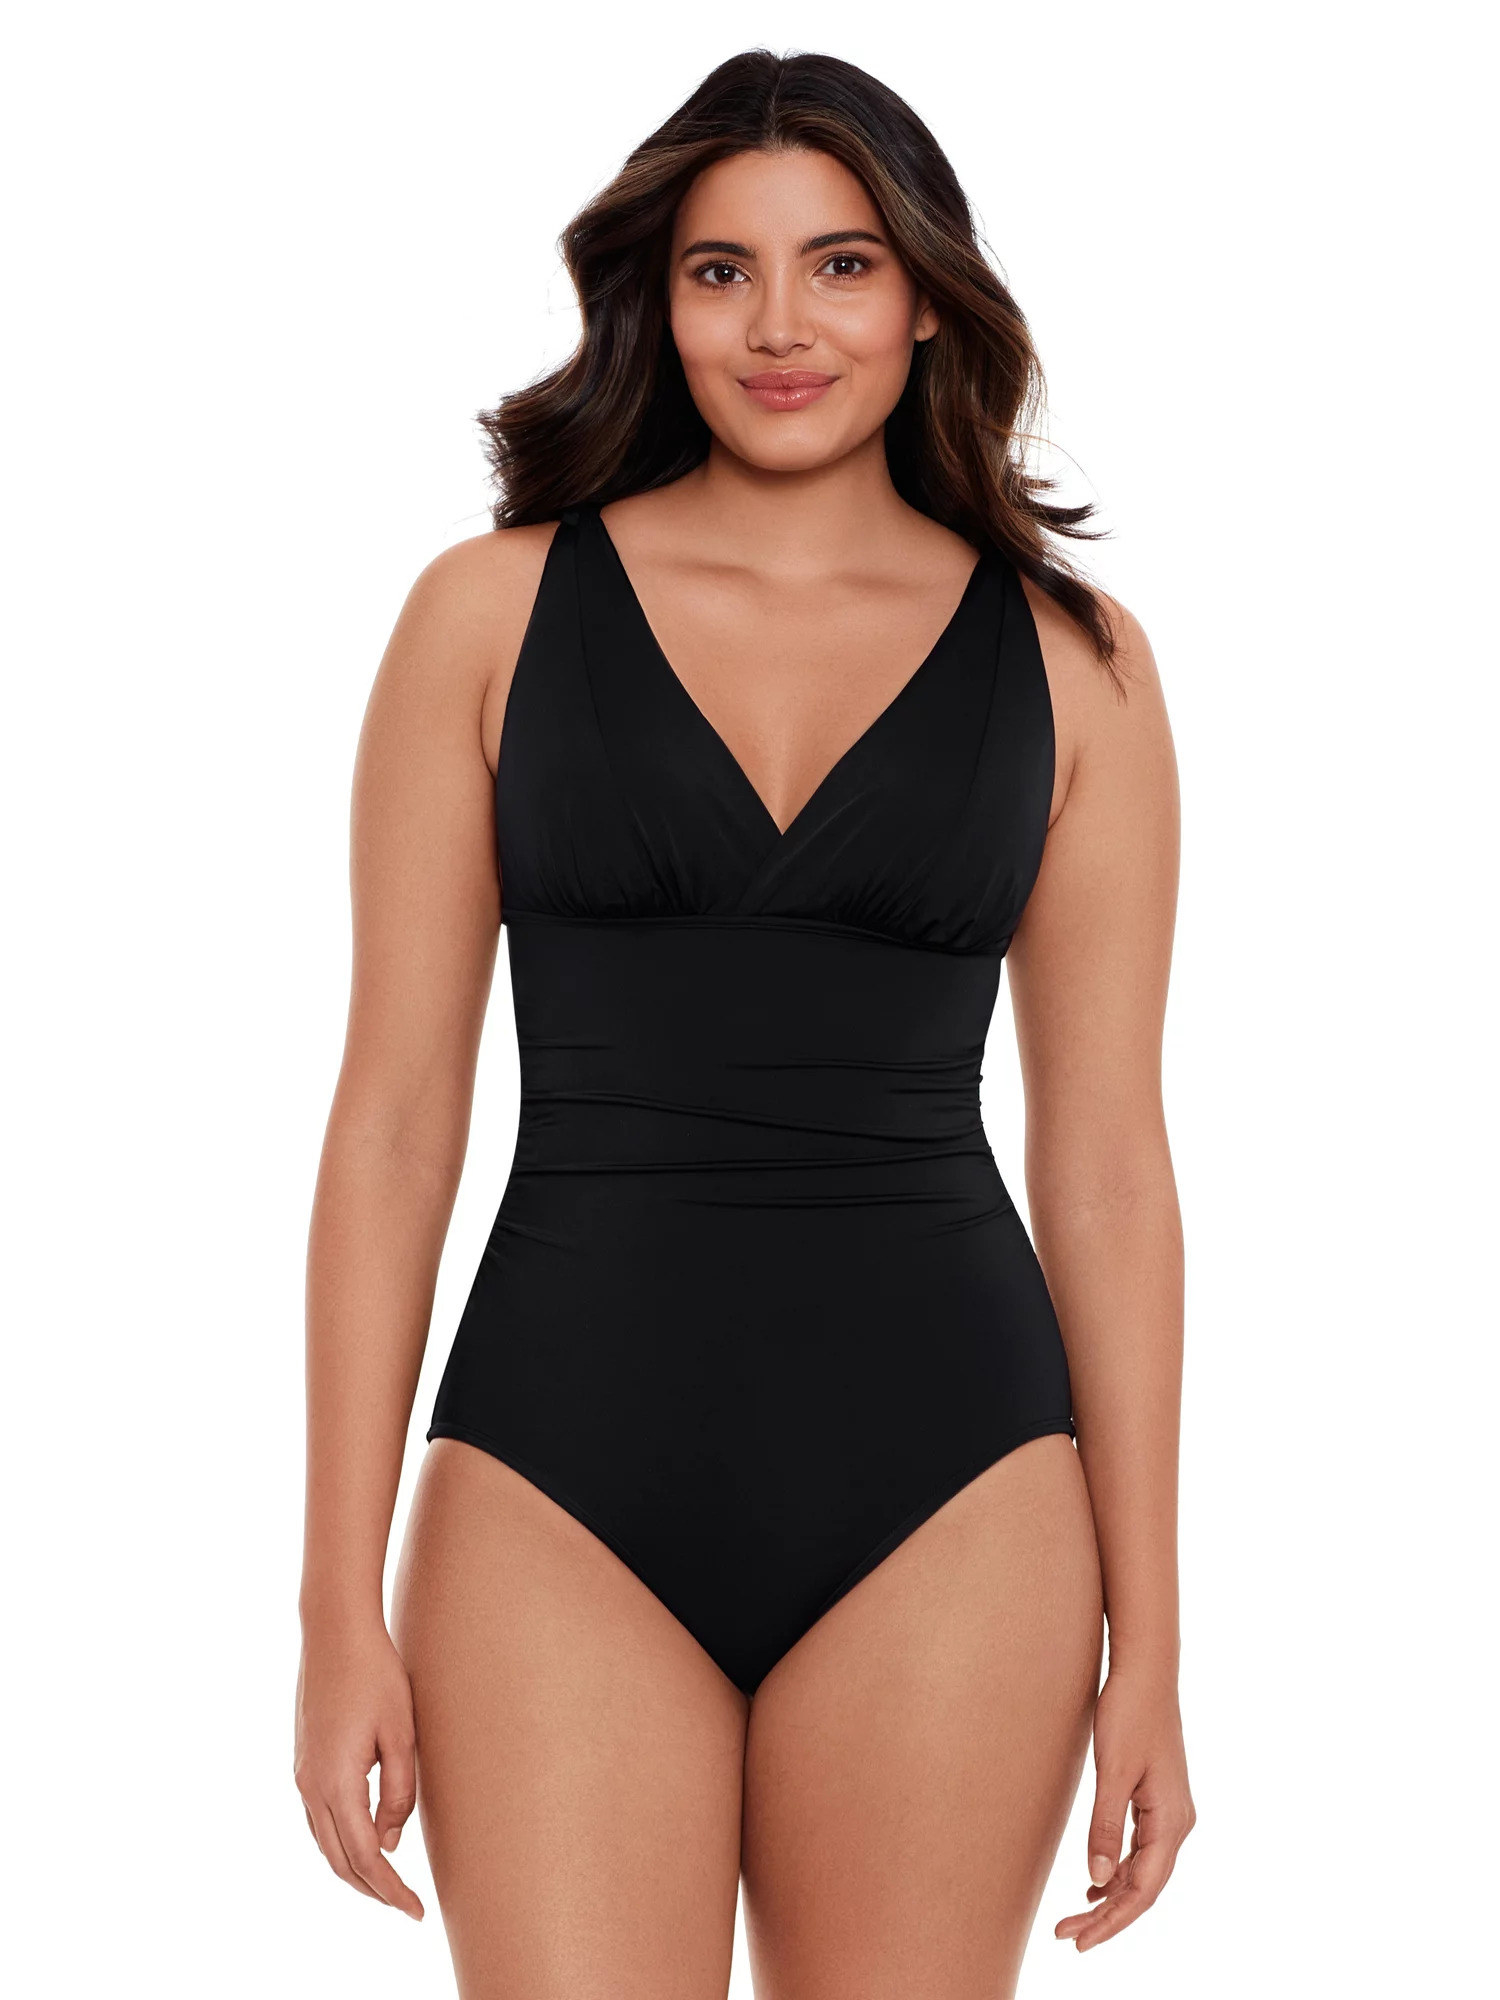 Model wearing the black swimsuit